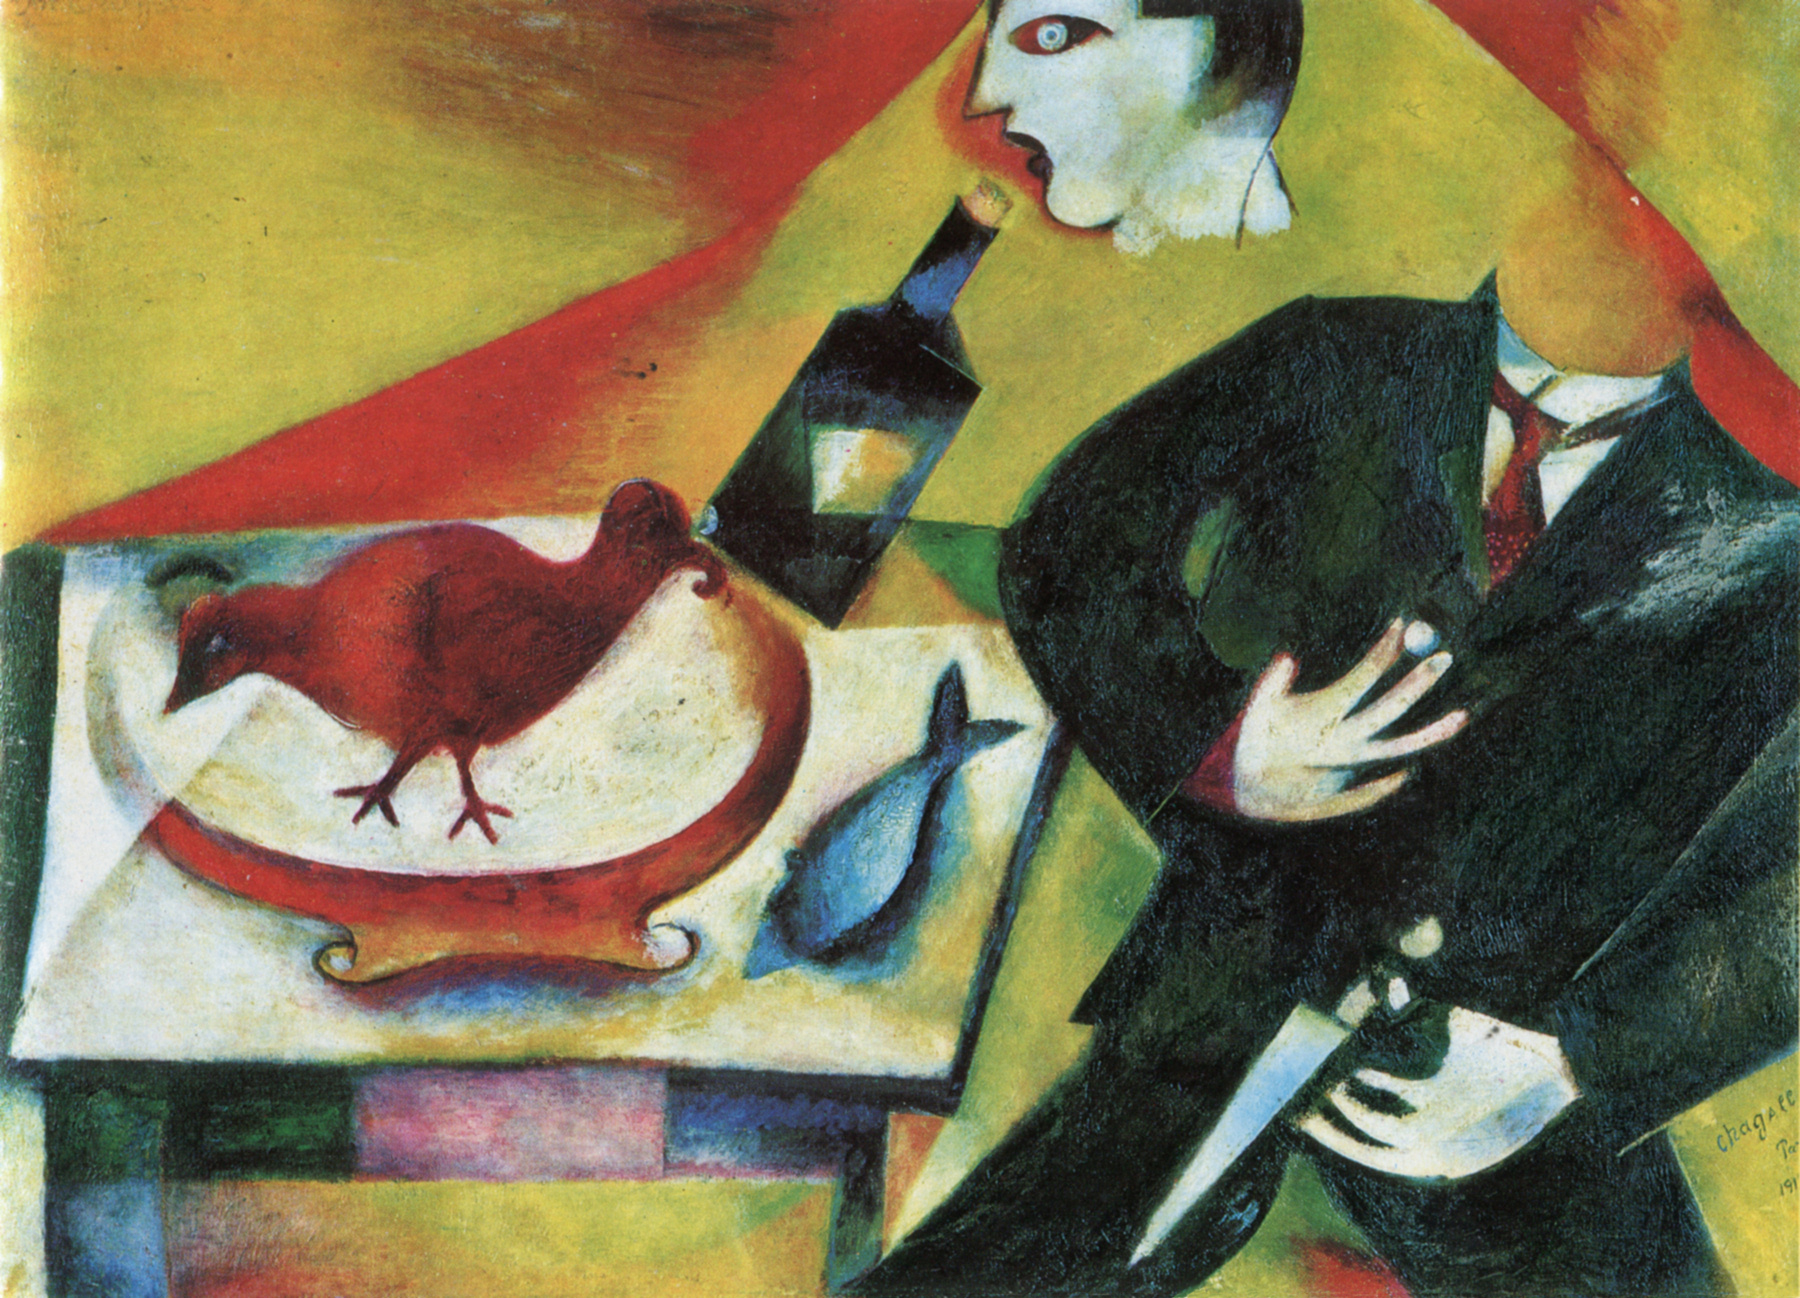 El borracho by Marc Chagall - 1911-12 Colección privada